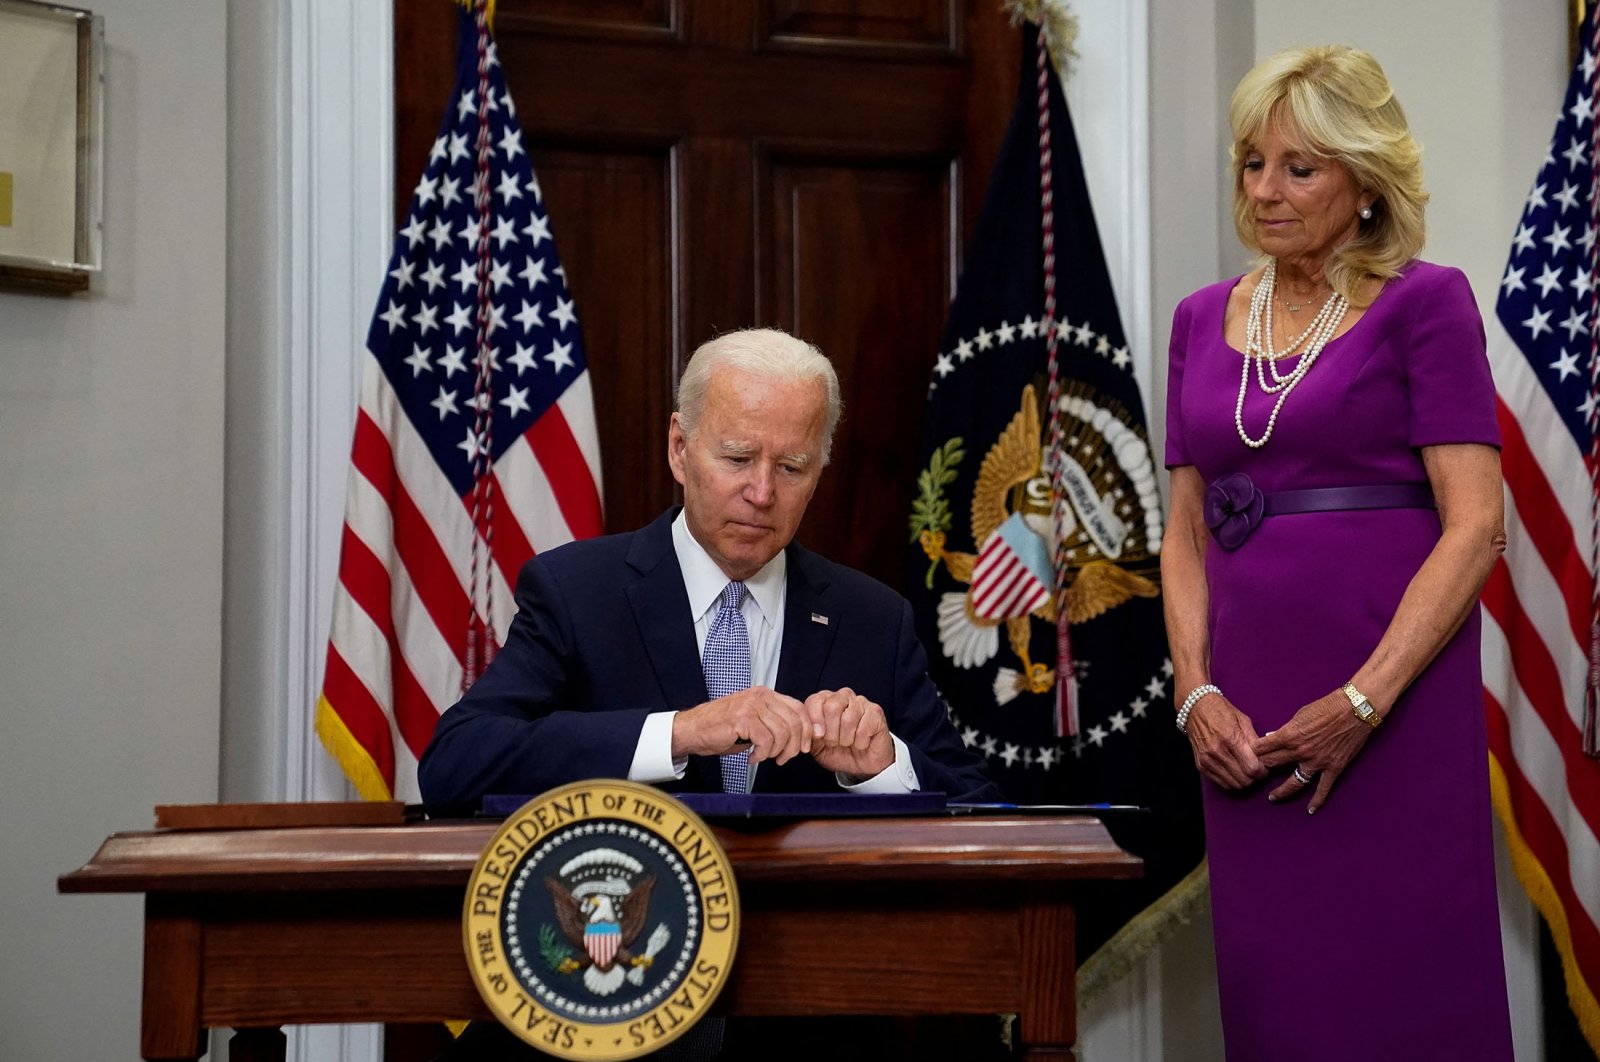 Biden menandatangani undang-undang kontrol senjata bipartisan AS pertama dalam beberapa dekade